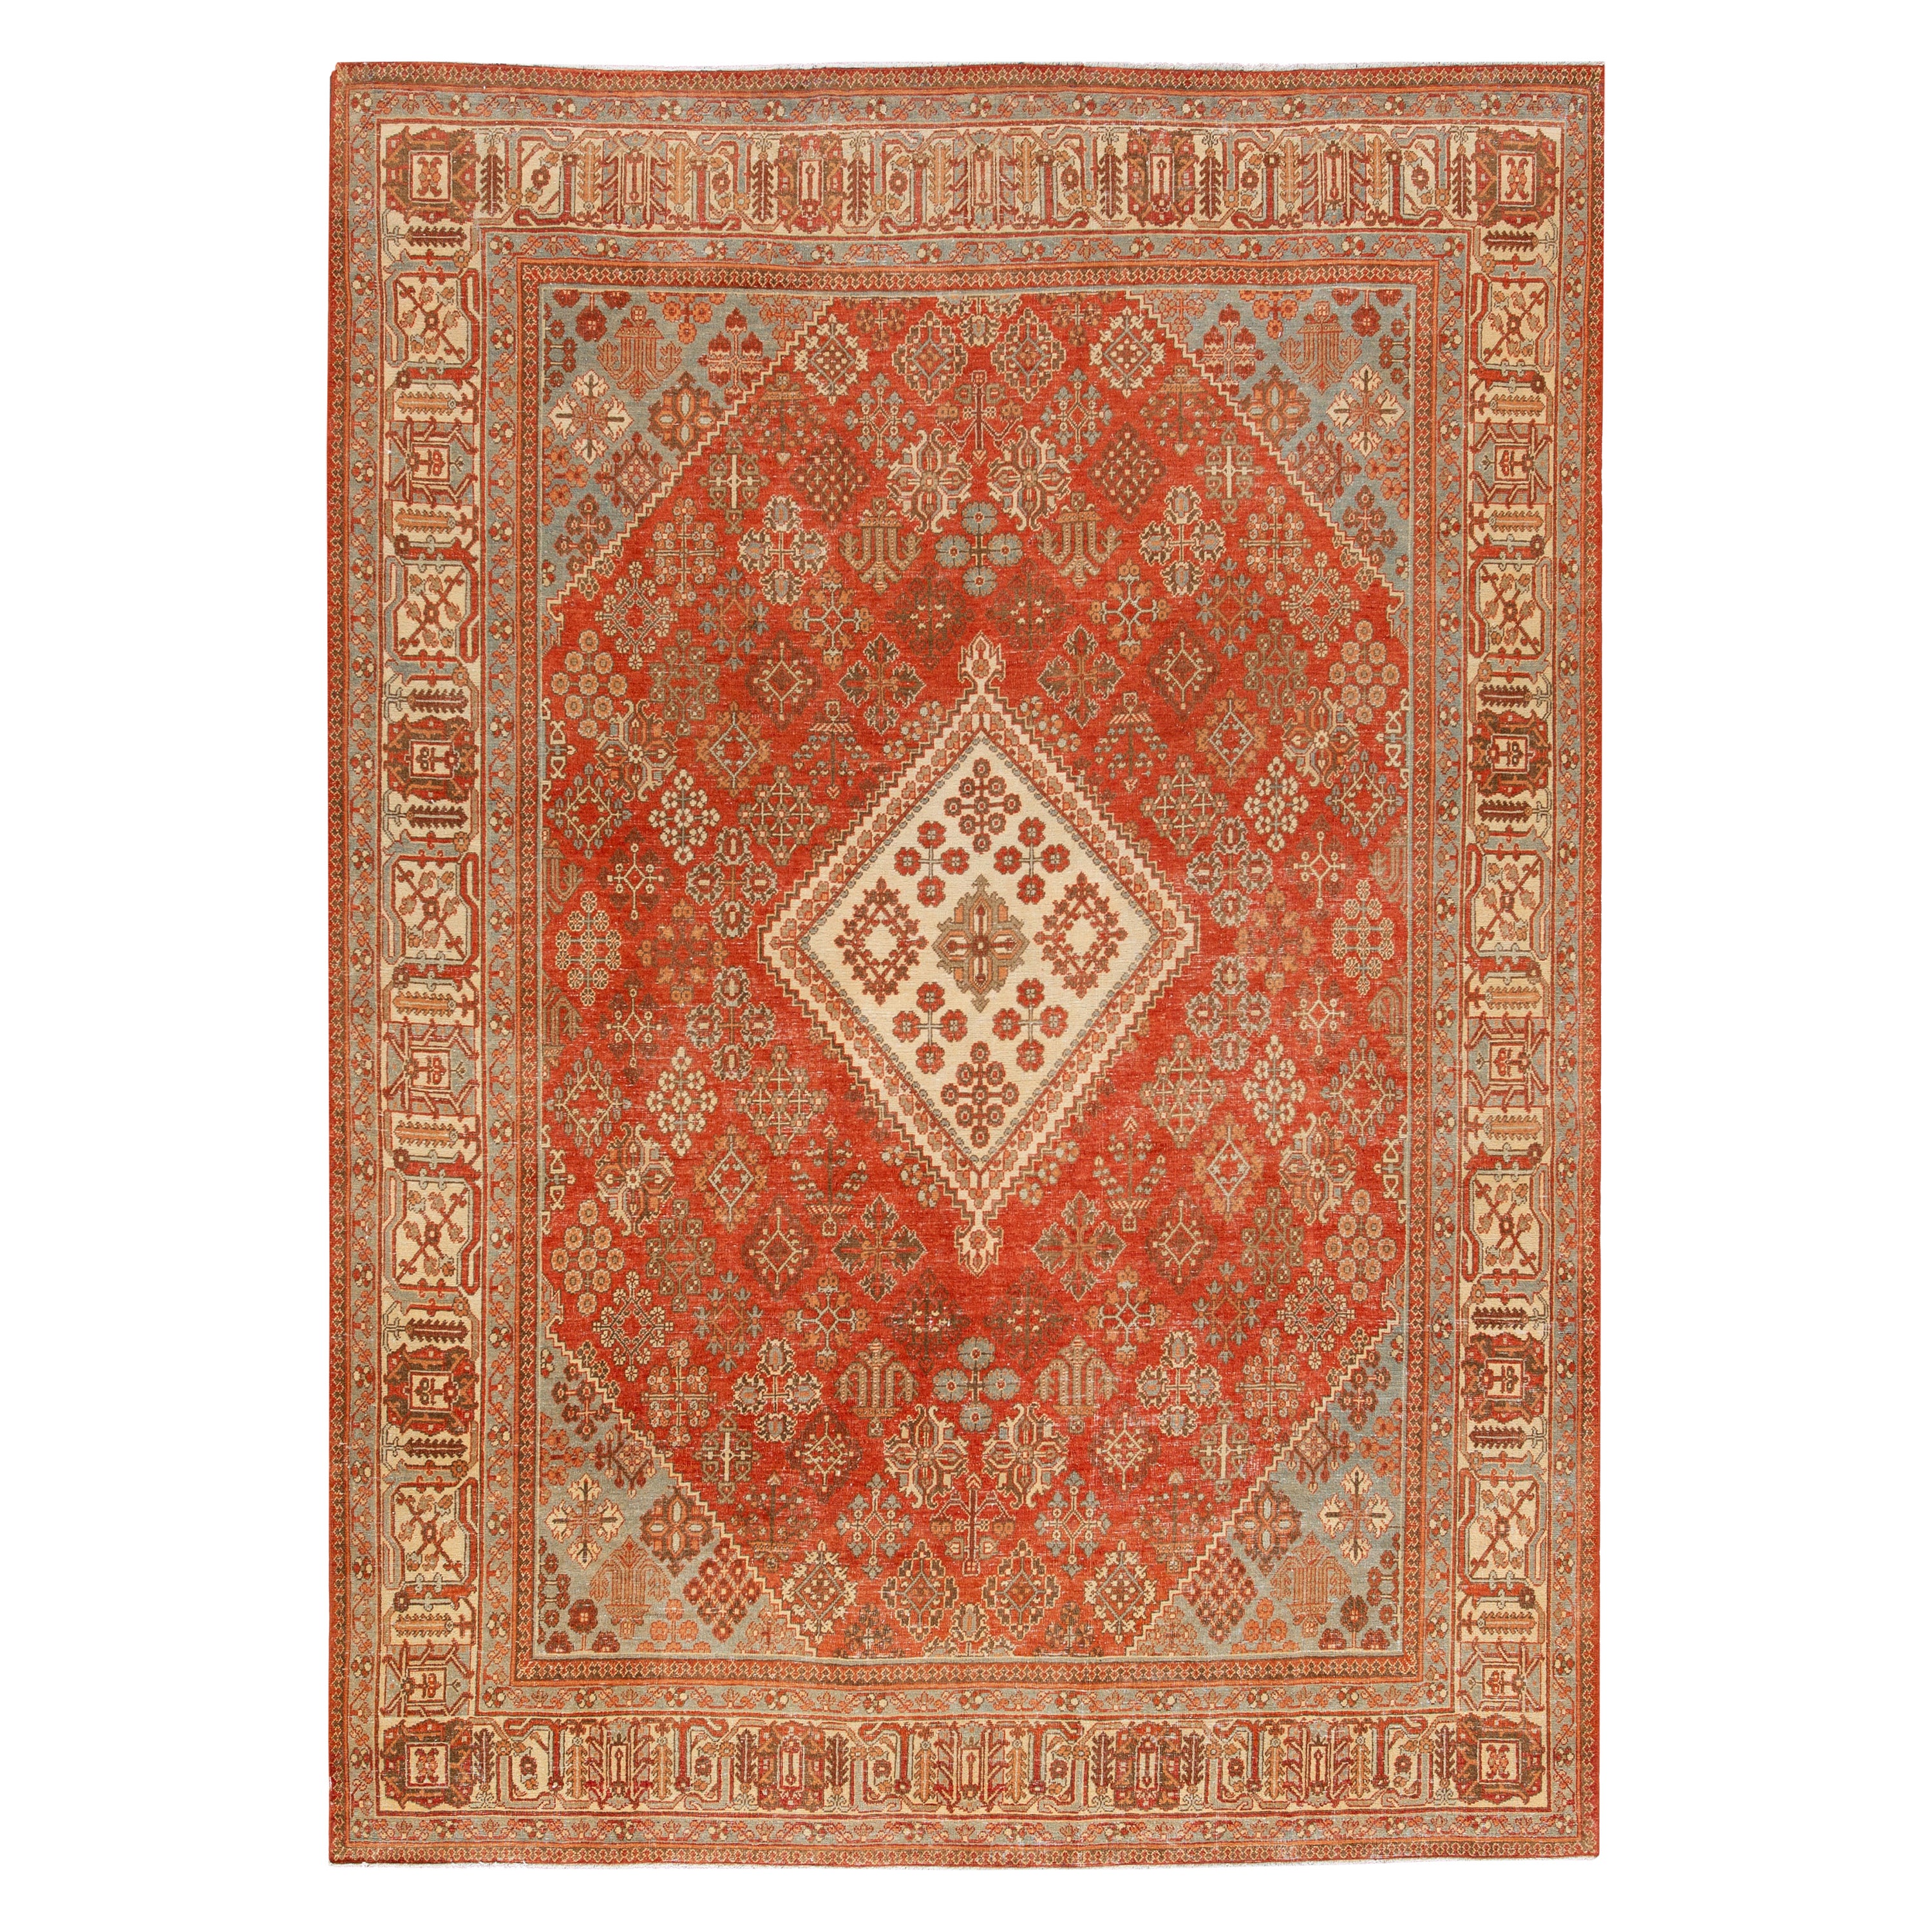 Medallion 1920s Handmade Josheghan Persian Wool Rug in Orange/Rust